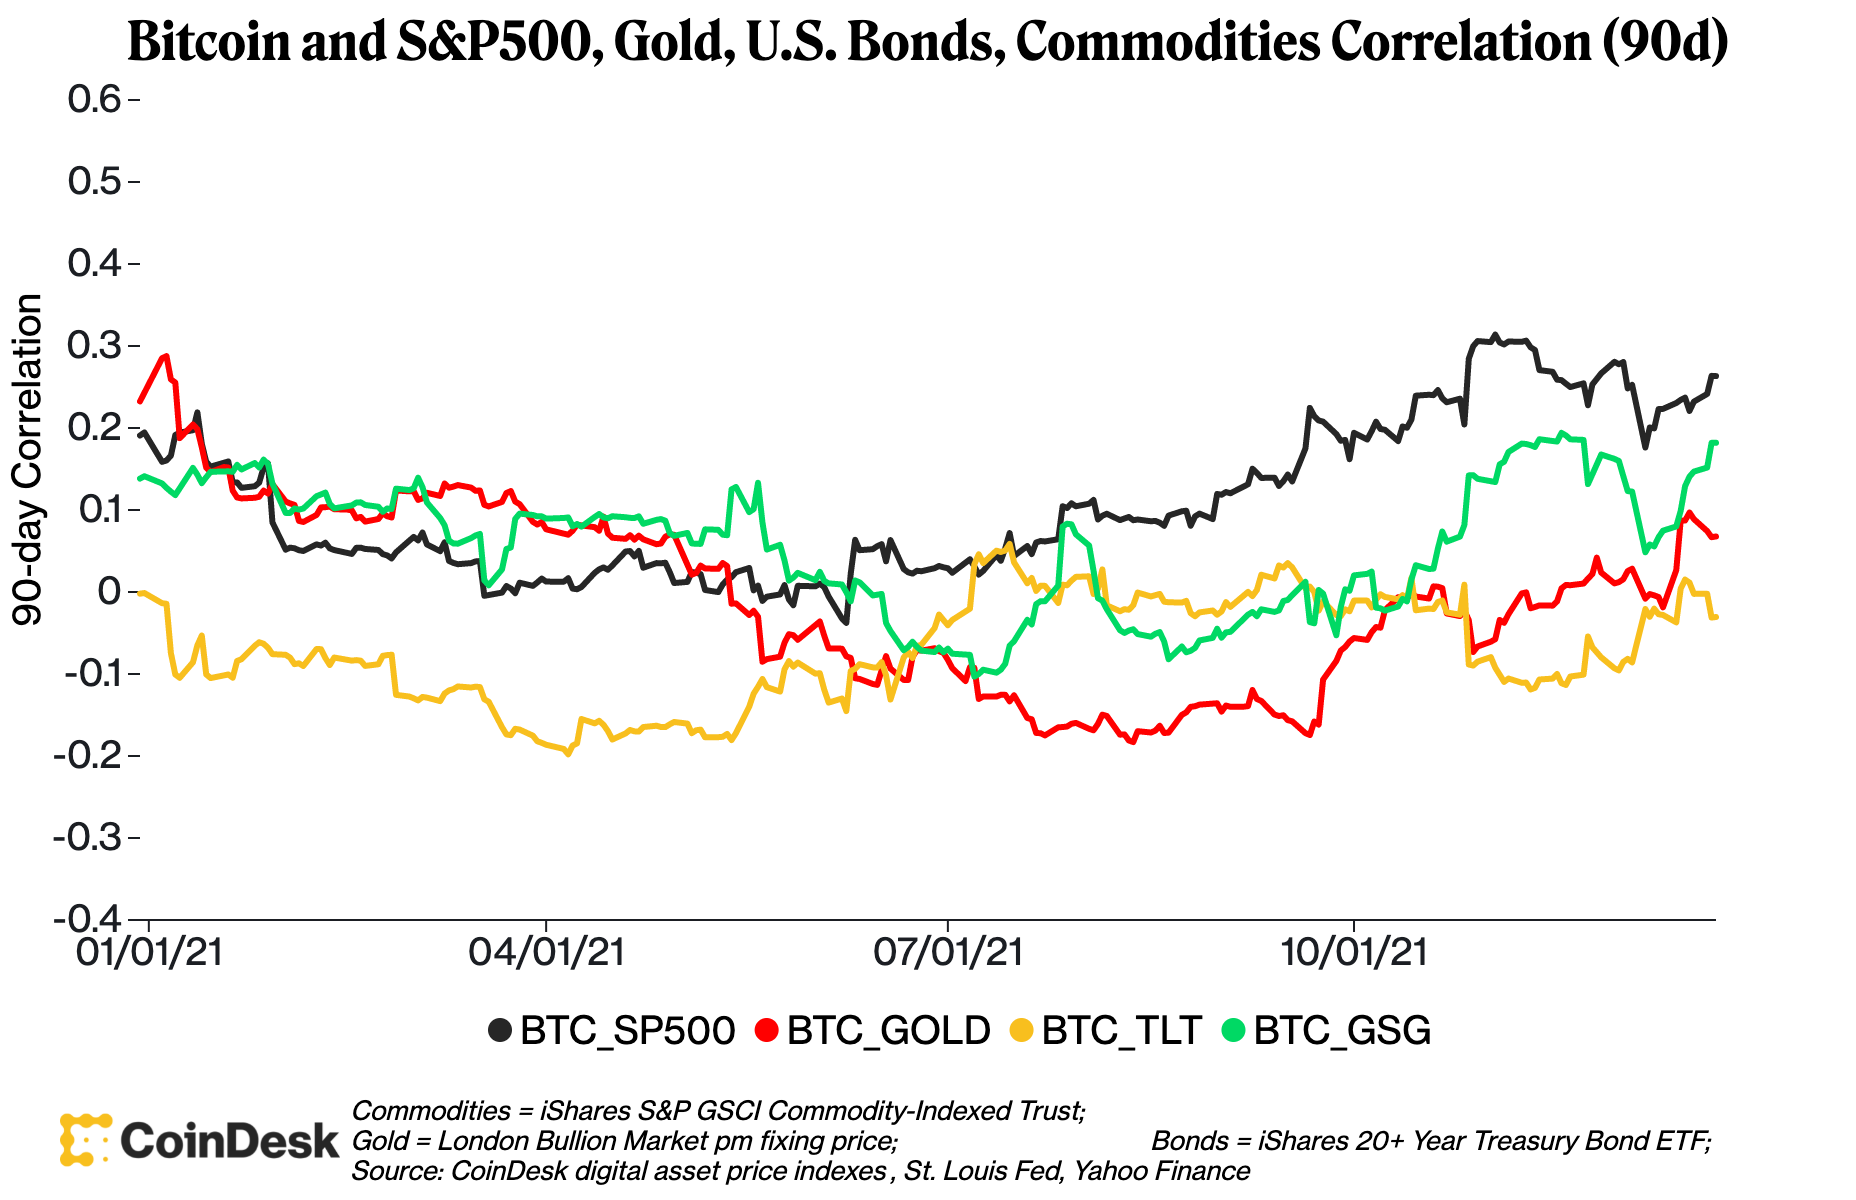 Correlación entre bitcoin y el S&P500, oro, bonos estadounidenses y materias primas (90 días).